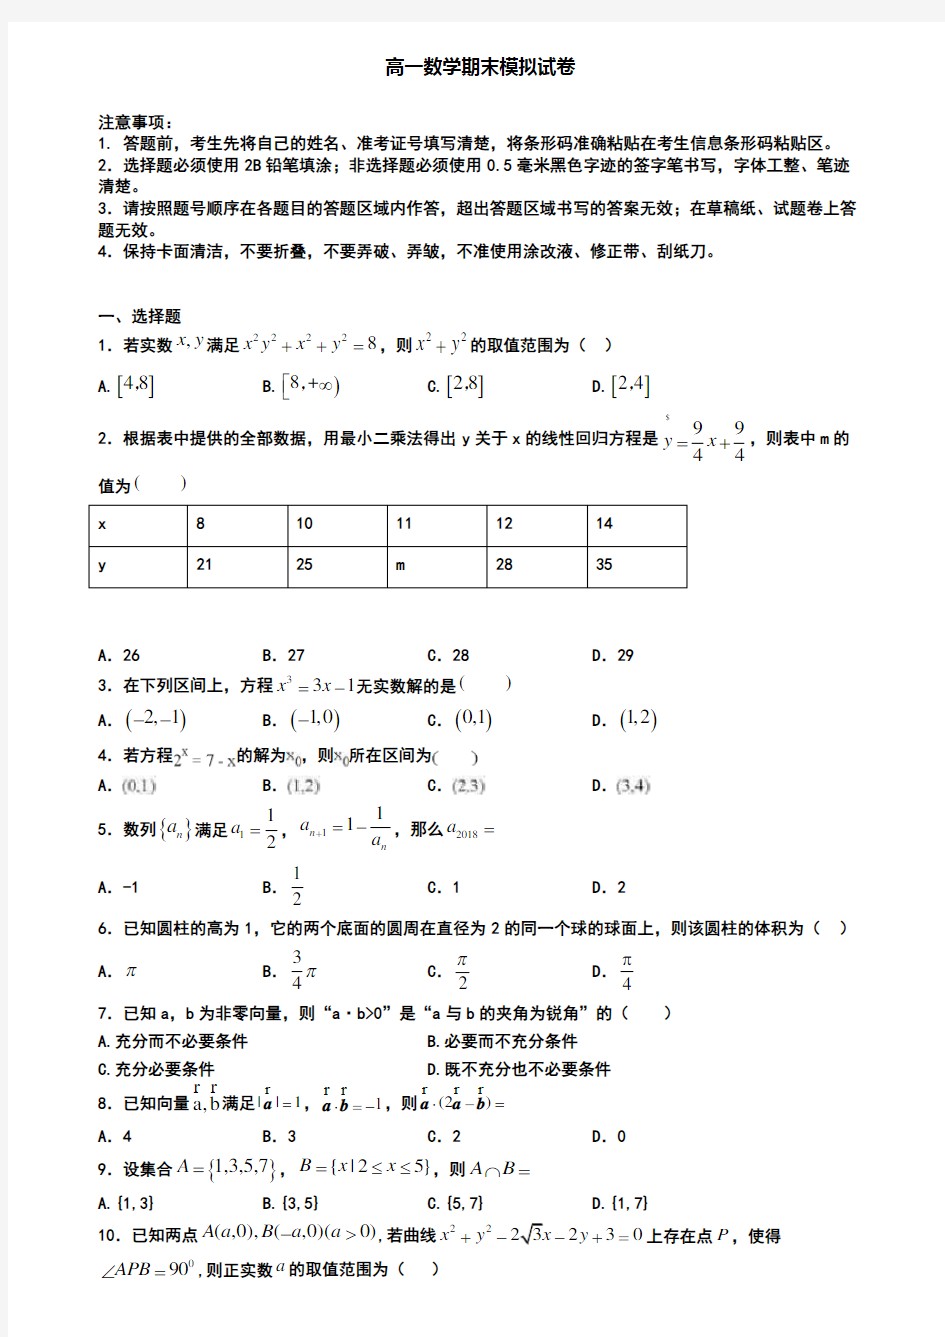 (8份试卷合集)2019-2020学年武汉市数学高一第一学期期末统考模拟试题